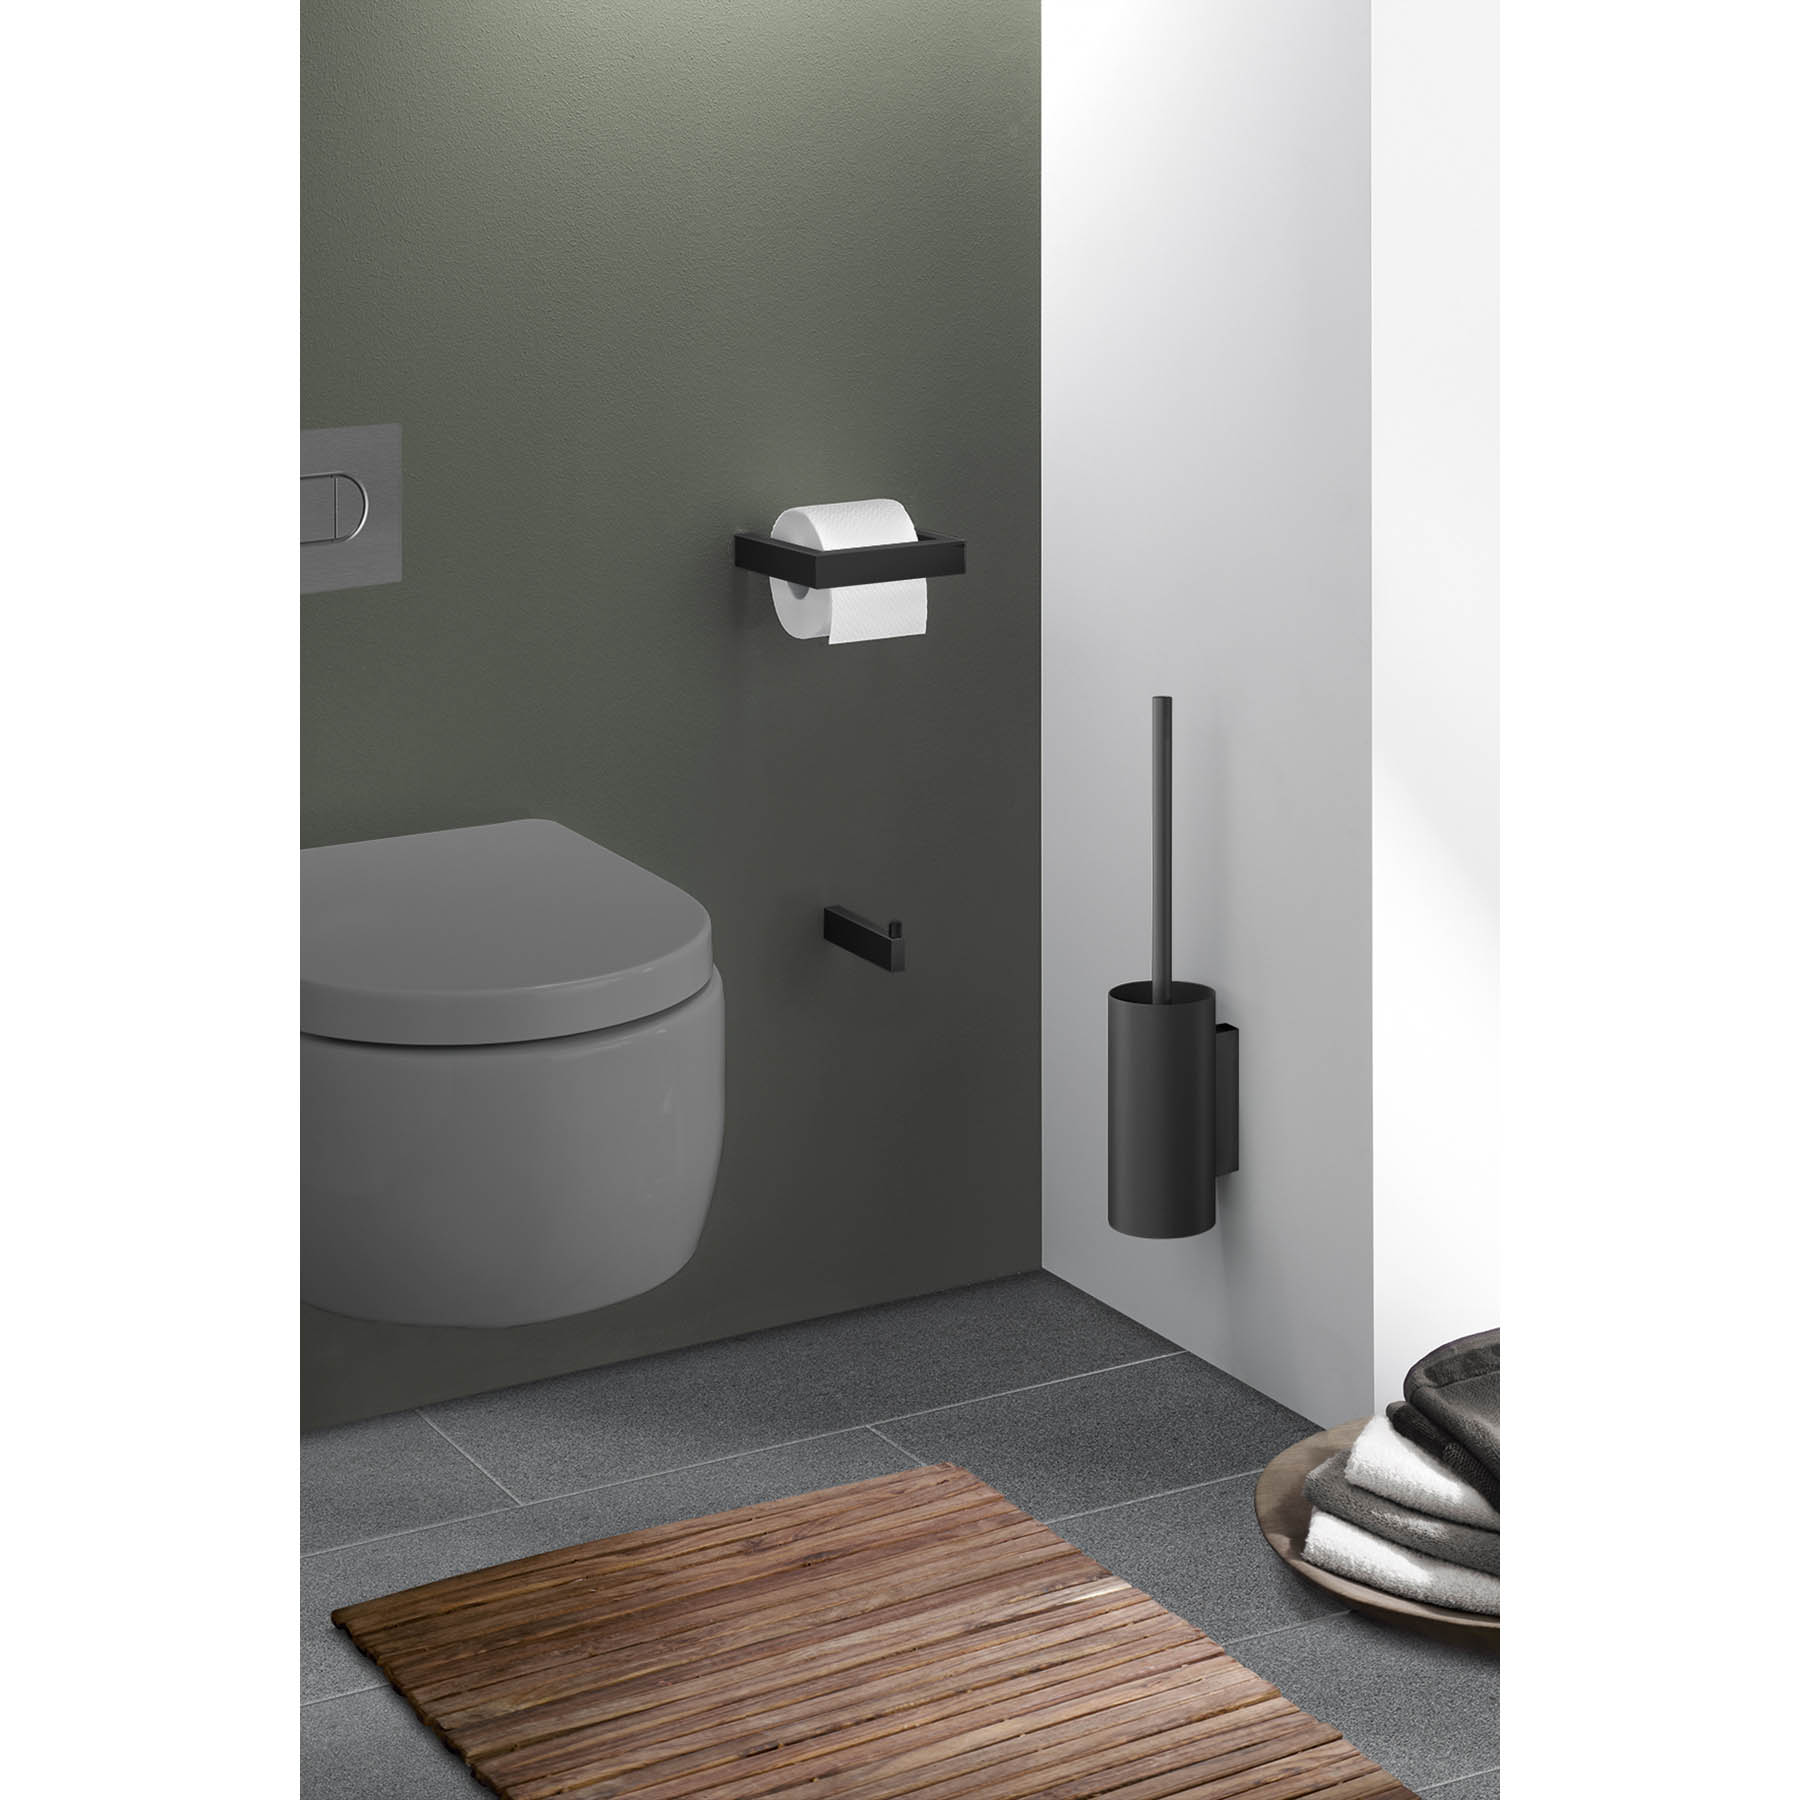 ZACK Toilettenbürste LINEA Edelstahl matt schwarz zur Wandmontage, Toilettenbürsten & Halter, Badaccessoires, WOHNEN & HAUSHALT